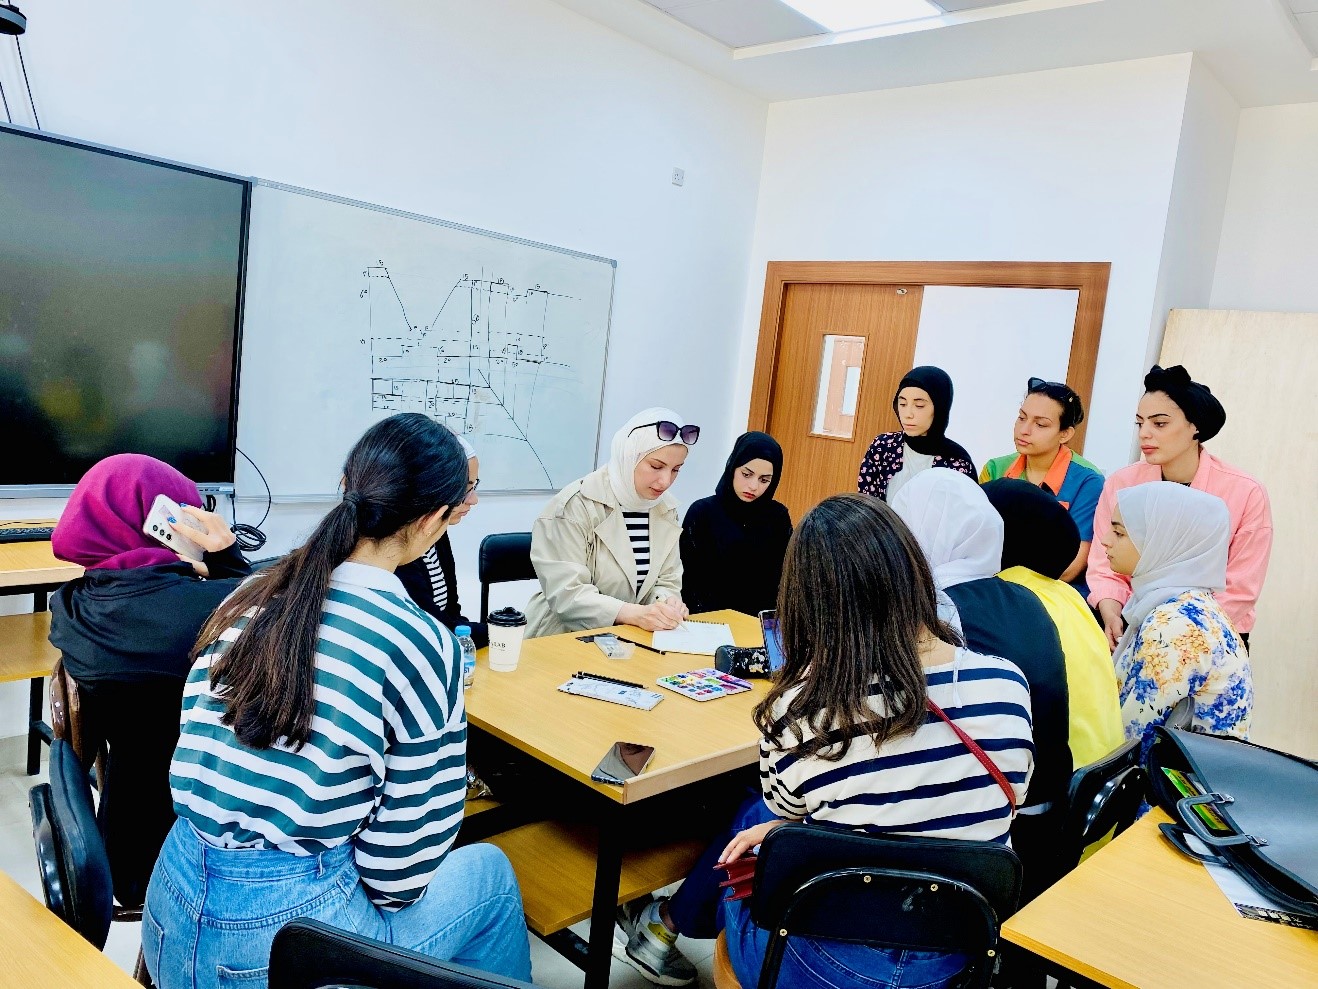 دورة تدريبية حول "الرسم والاظهار المعماري باستخدام الالوان المائية" في عمان العربية2